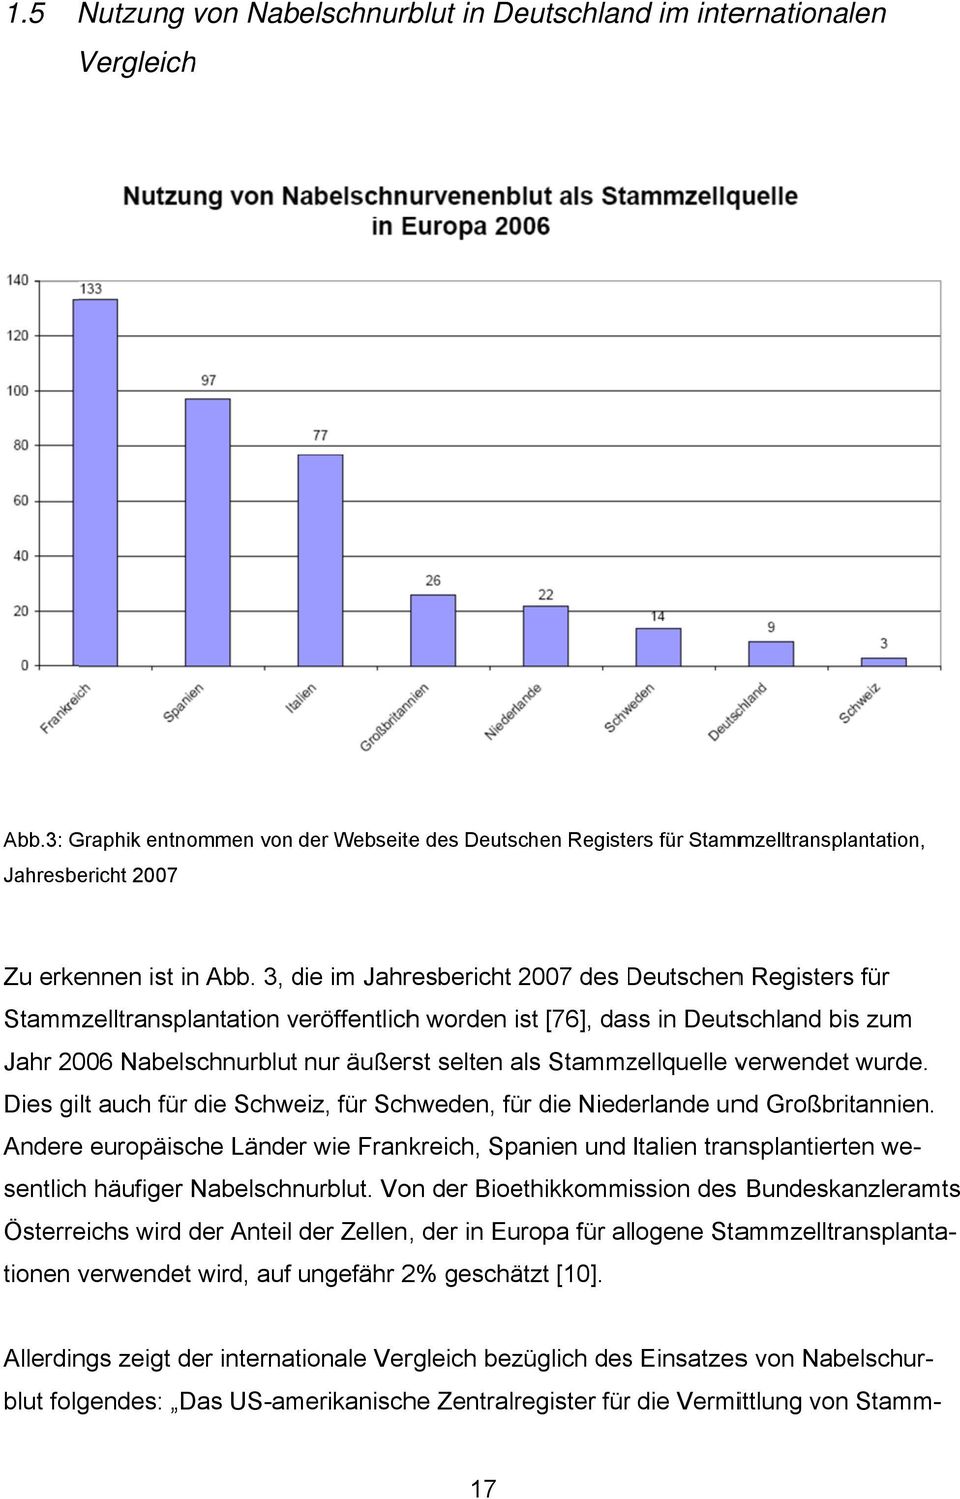 3, die im Jahresbericht 2007 des DeutschenD n Registerss für Stammzelltransplantation veröffentlichh worden ist [76], dass in Deutschland bis zum Jahr 2006 Nabelschnurblut nur äußerst selten als